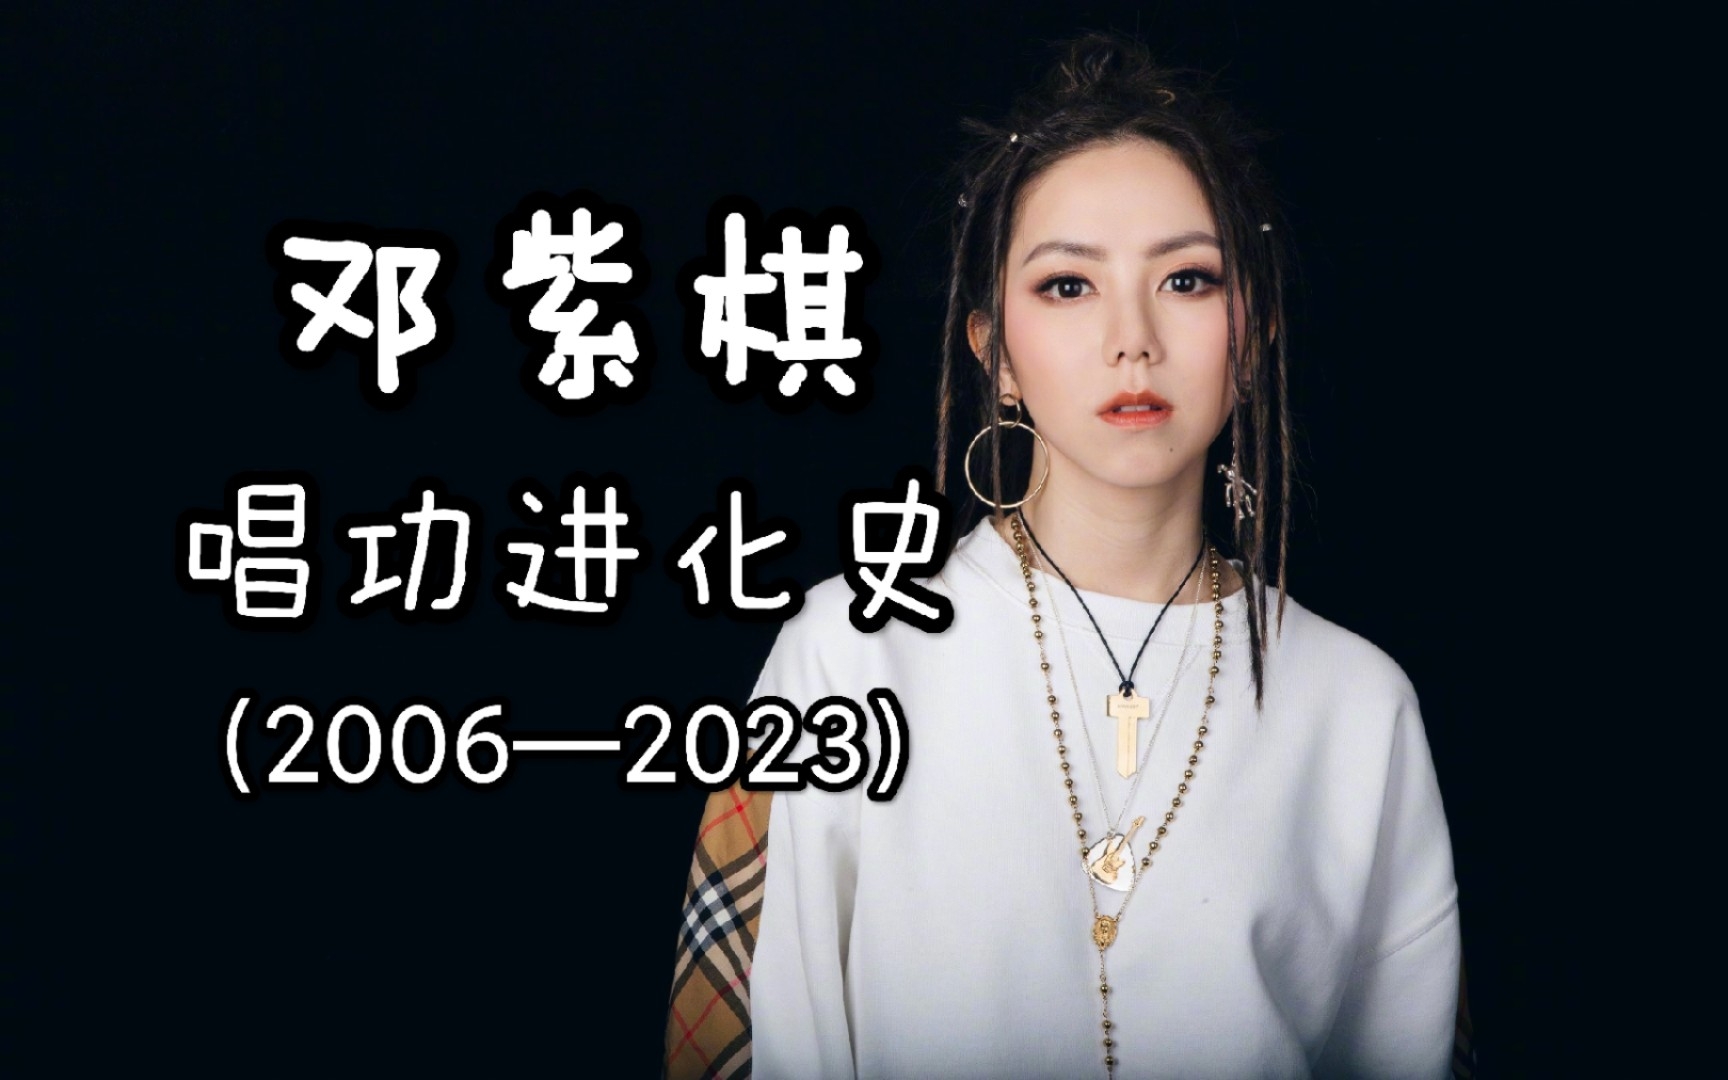 邓紫棋唱功进化史全解析(2006—2023) “铁肺女王”的唱功进阶之路